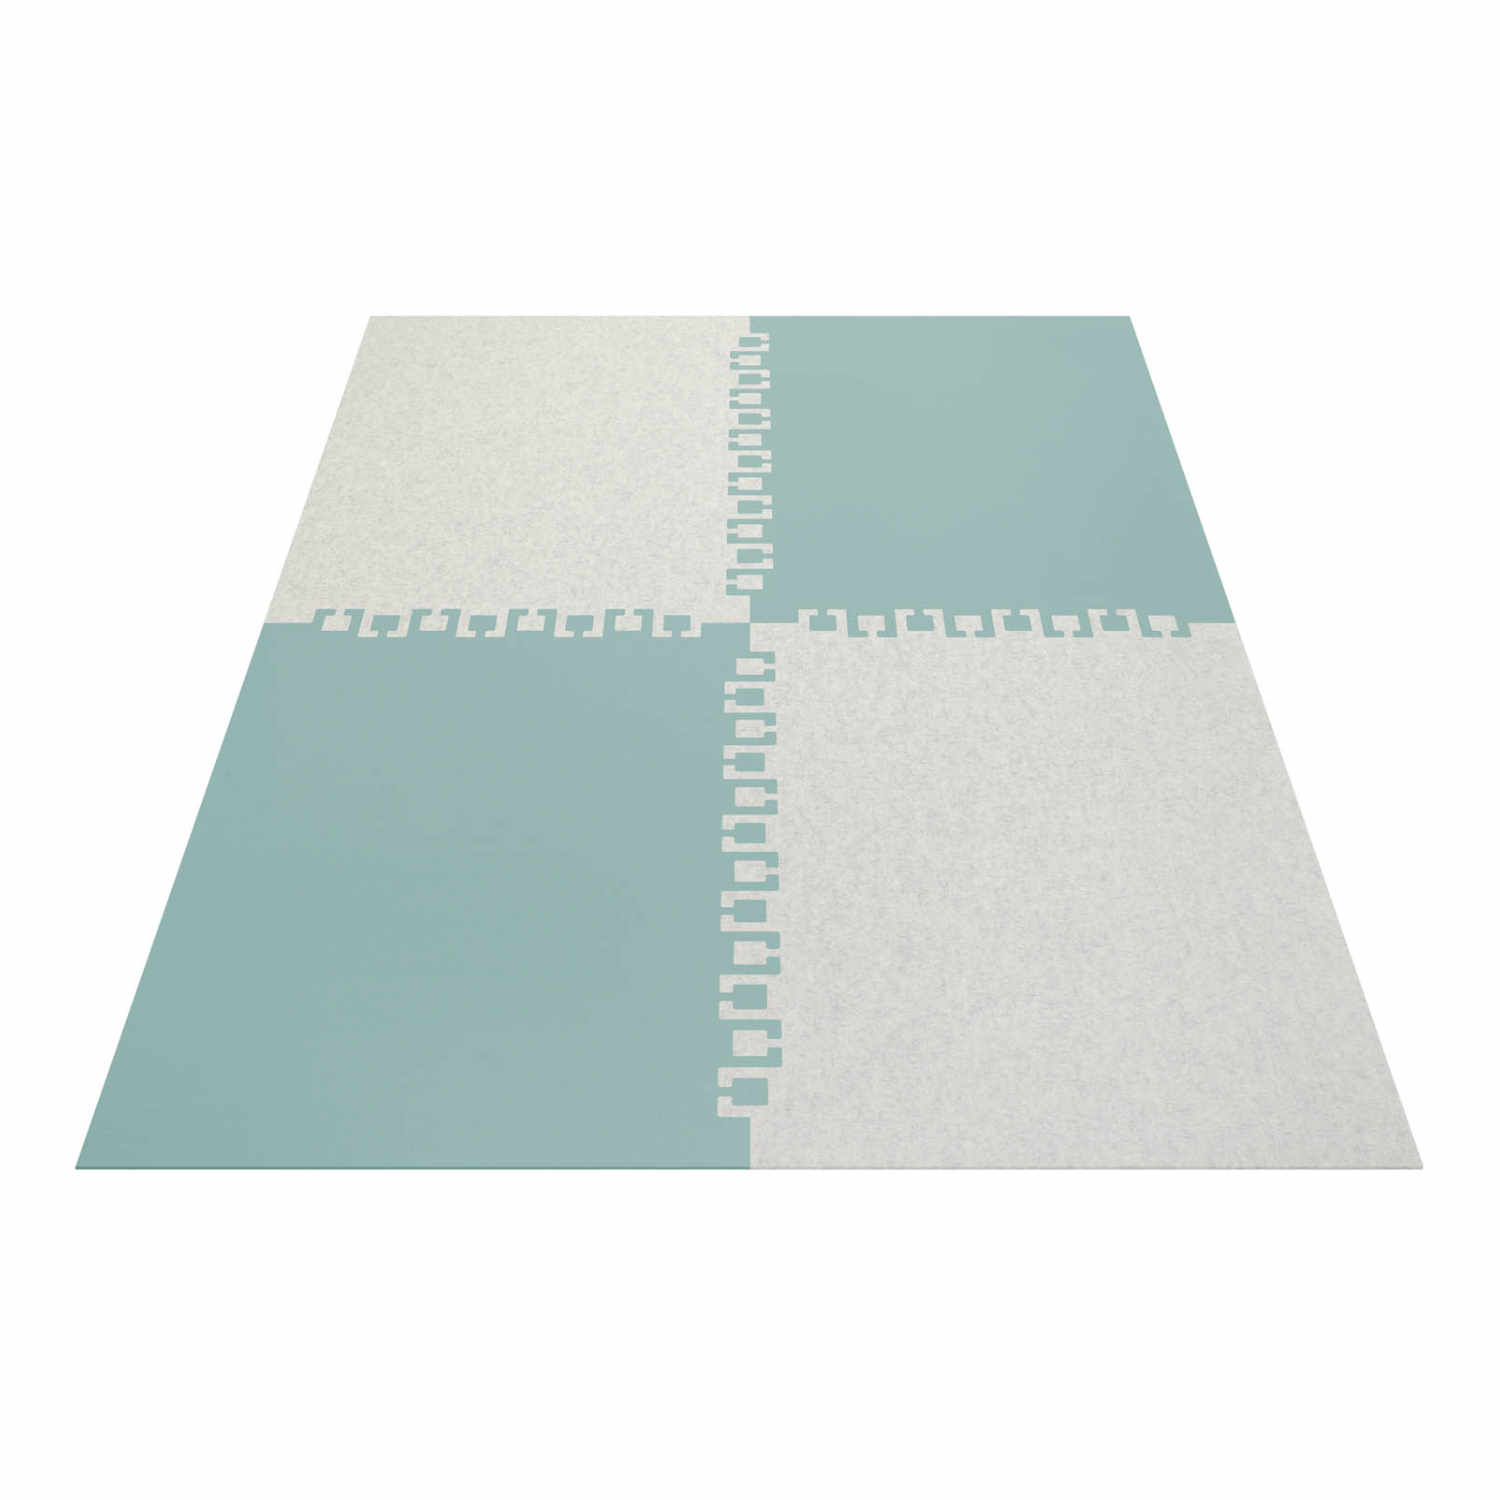 Twice rechteckig 4-teilig Teppich, Farbe graphit, Farbe 2 marmor 06, Grösse 180 x 240 cm von HEY-SIGN